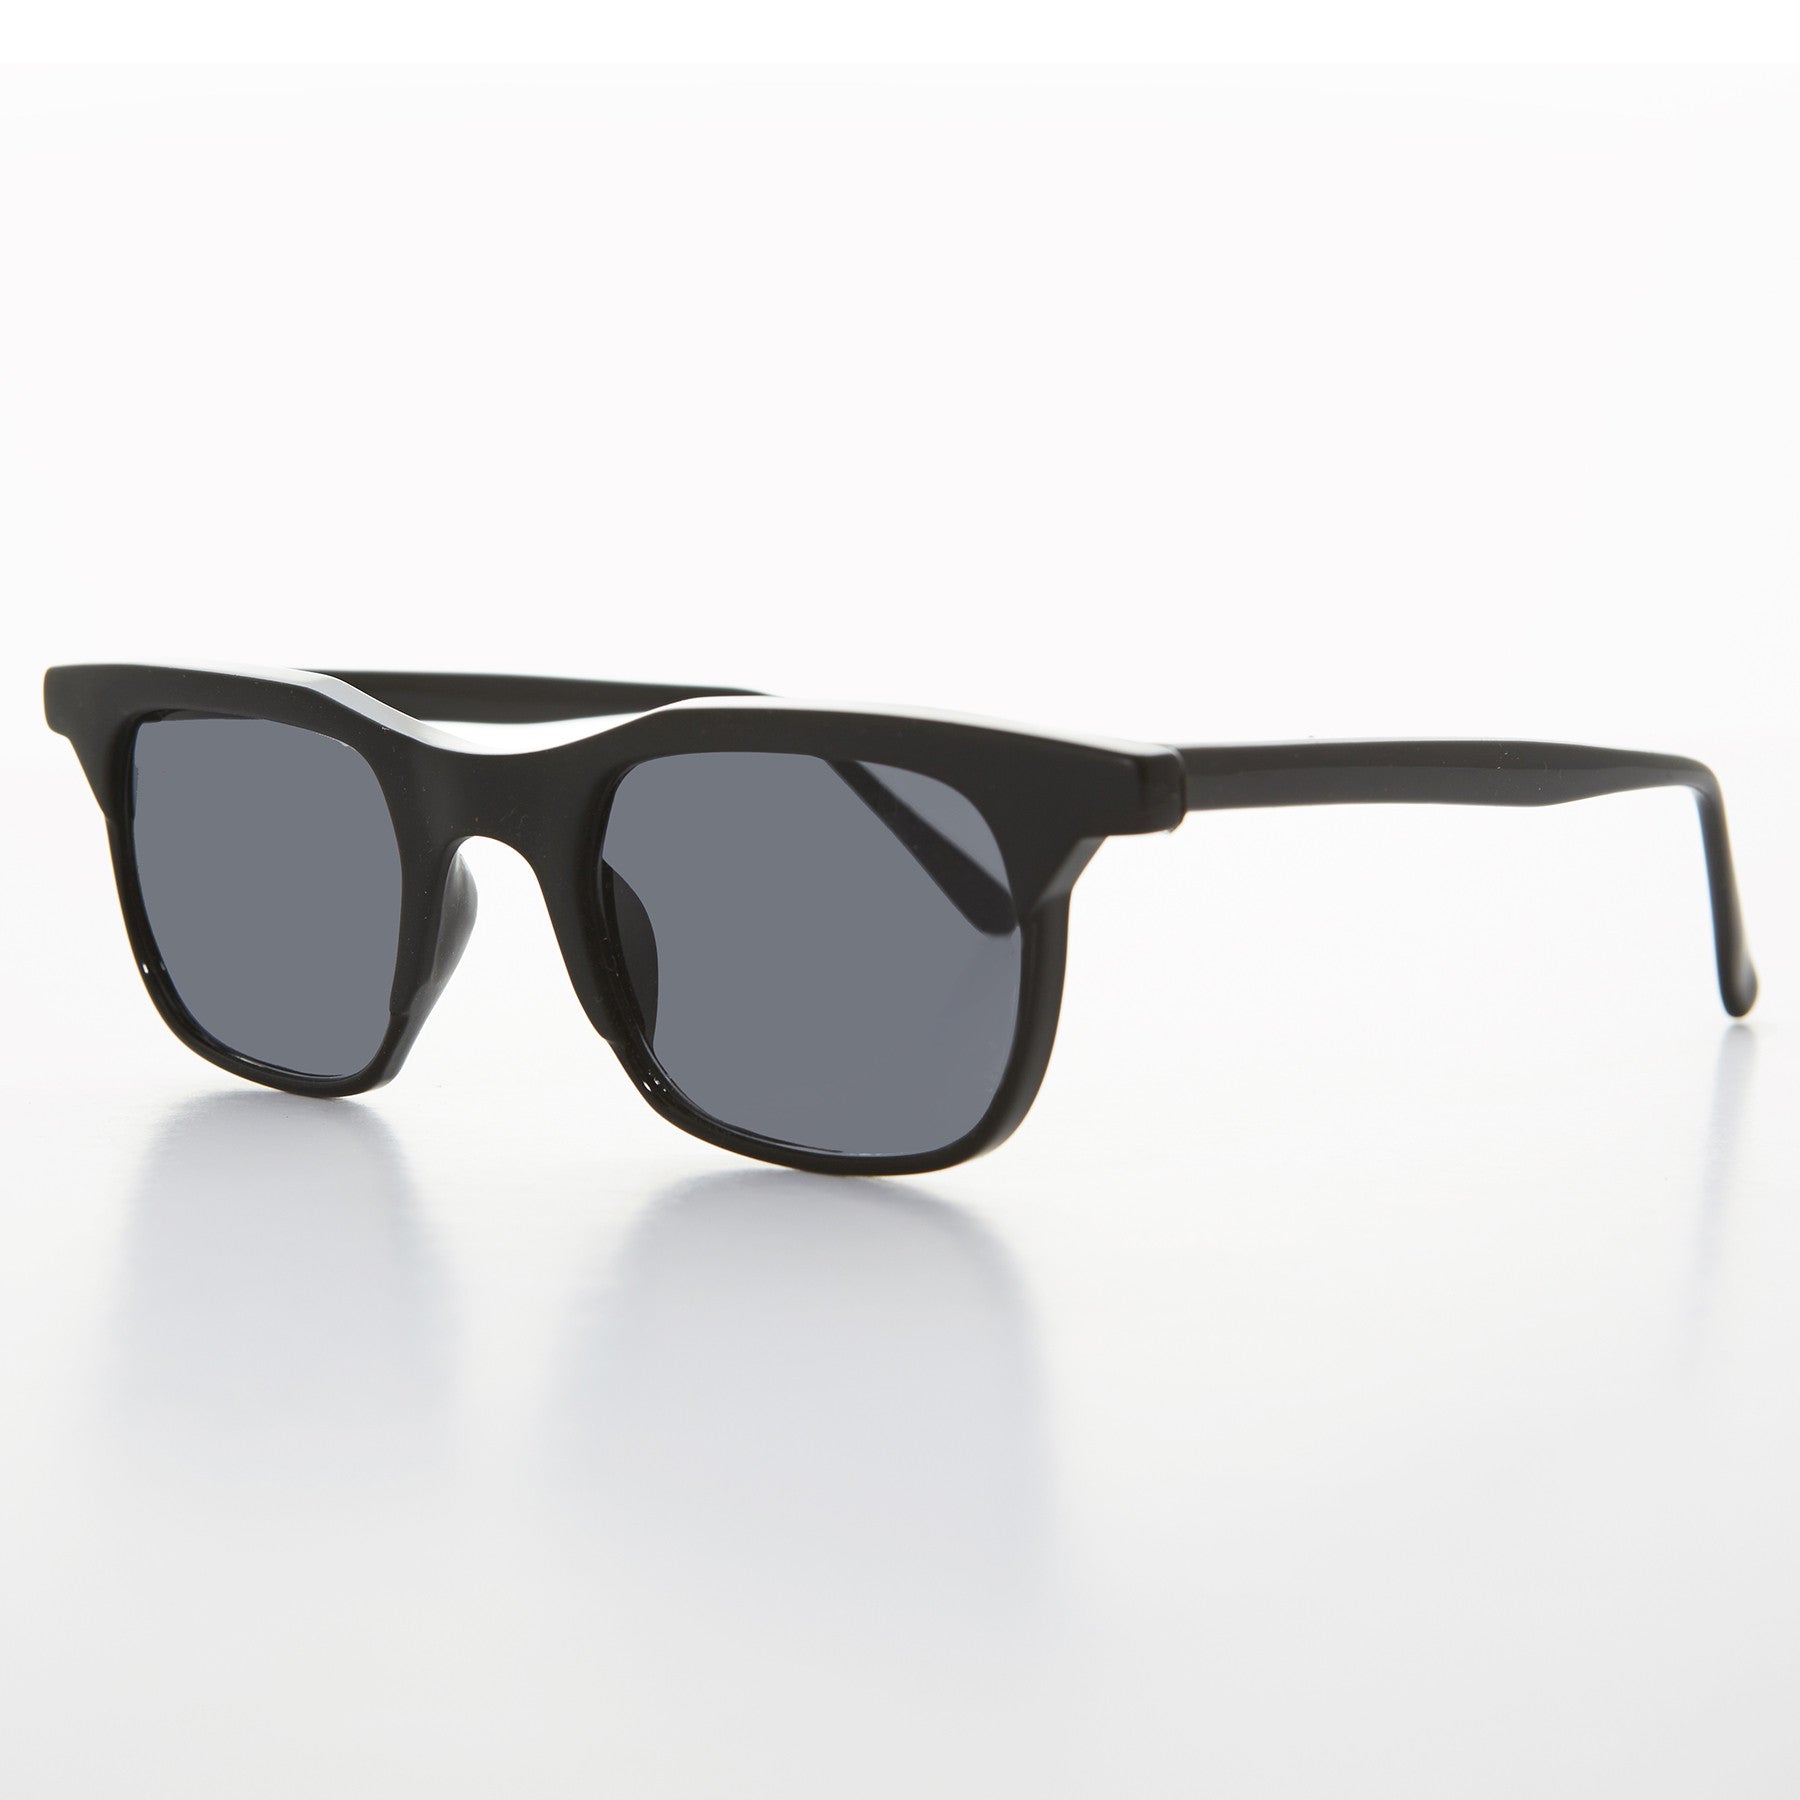 classic pantos nerd square vintage sunglasses